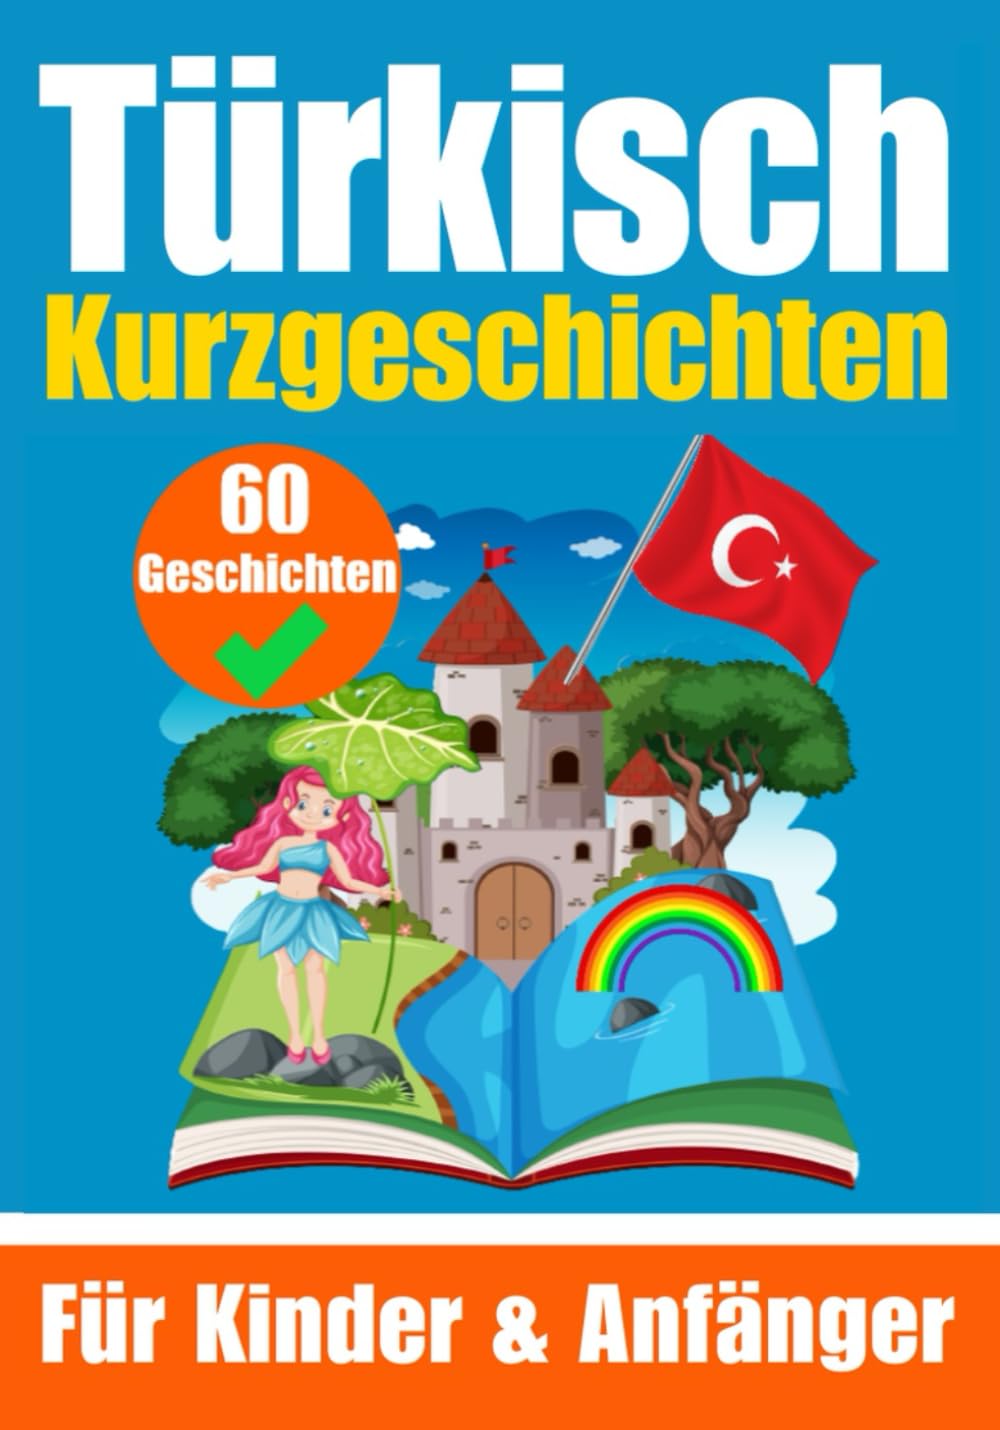 60 Kurzgeschichten auf Türkisch | Für Kinder und Anfänger